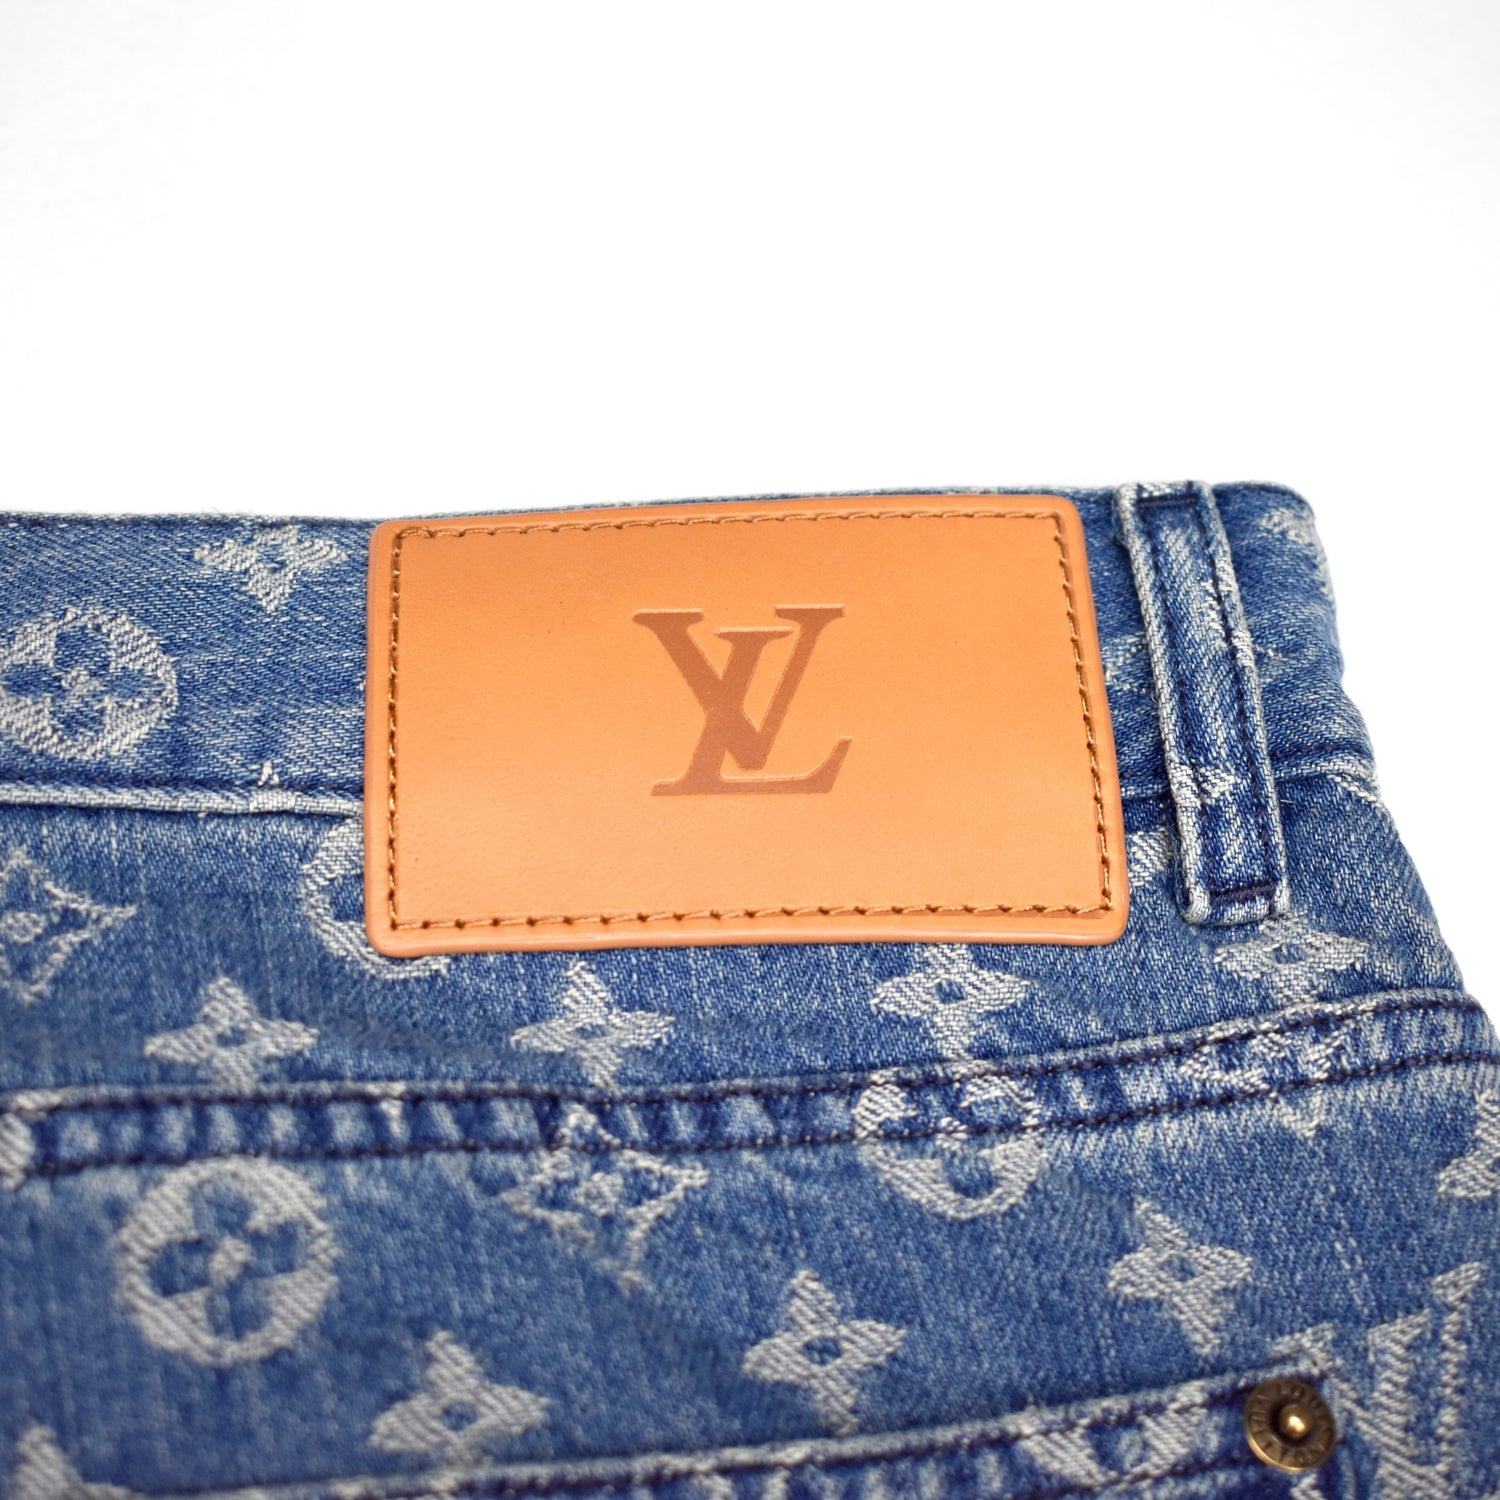 Calça Louis Vuitton x Supreme Denim Jeans